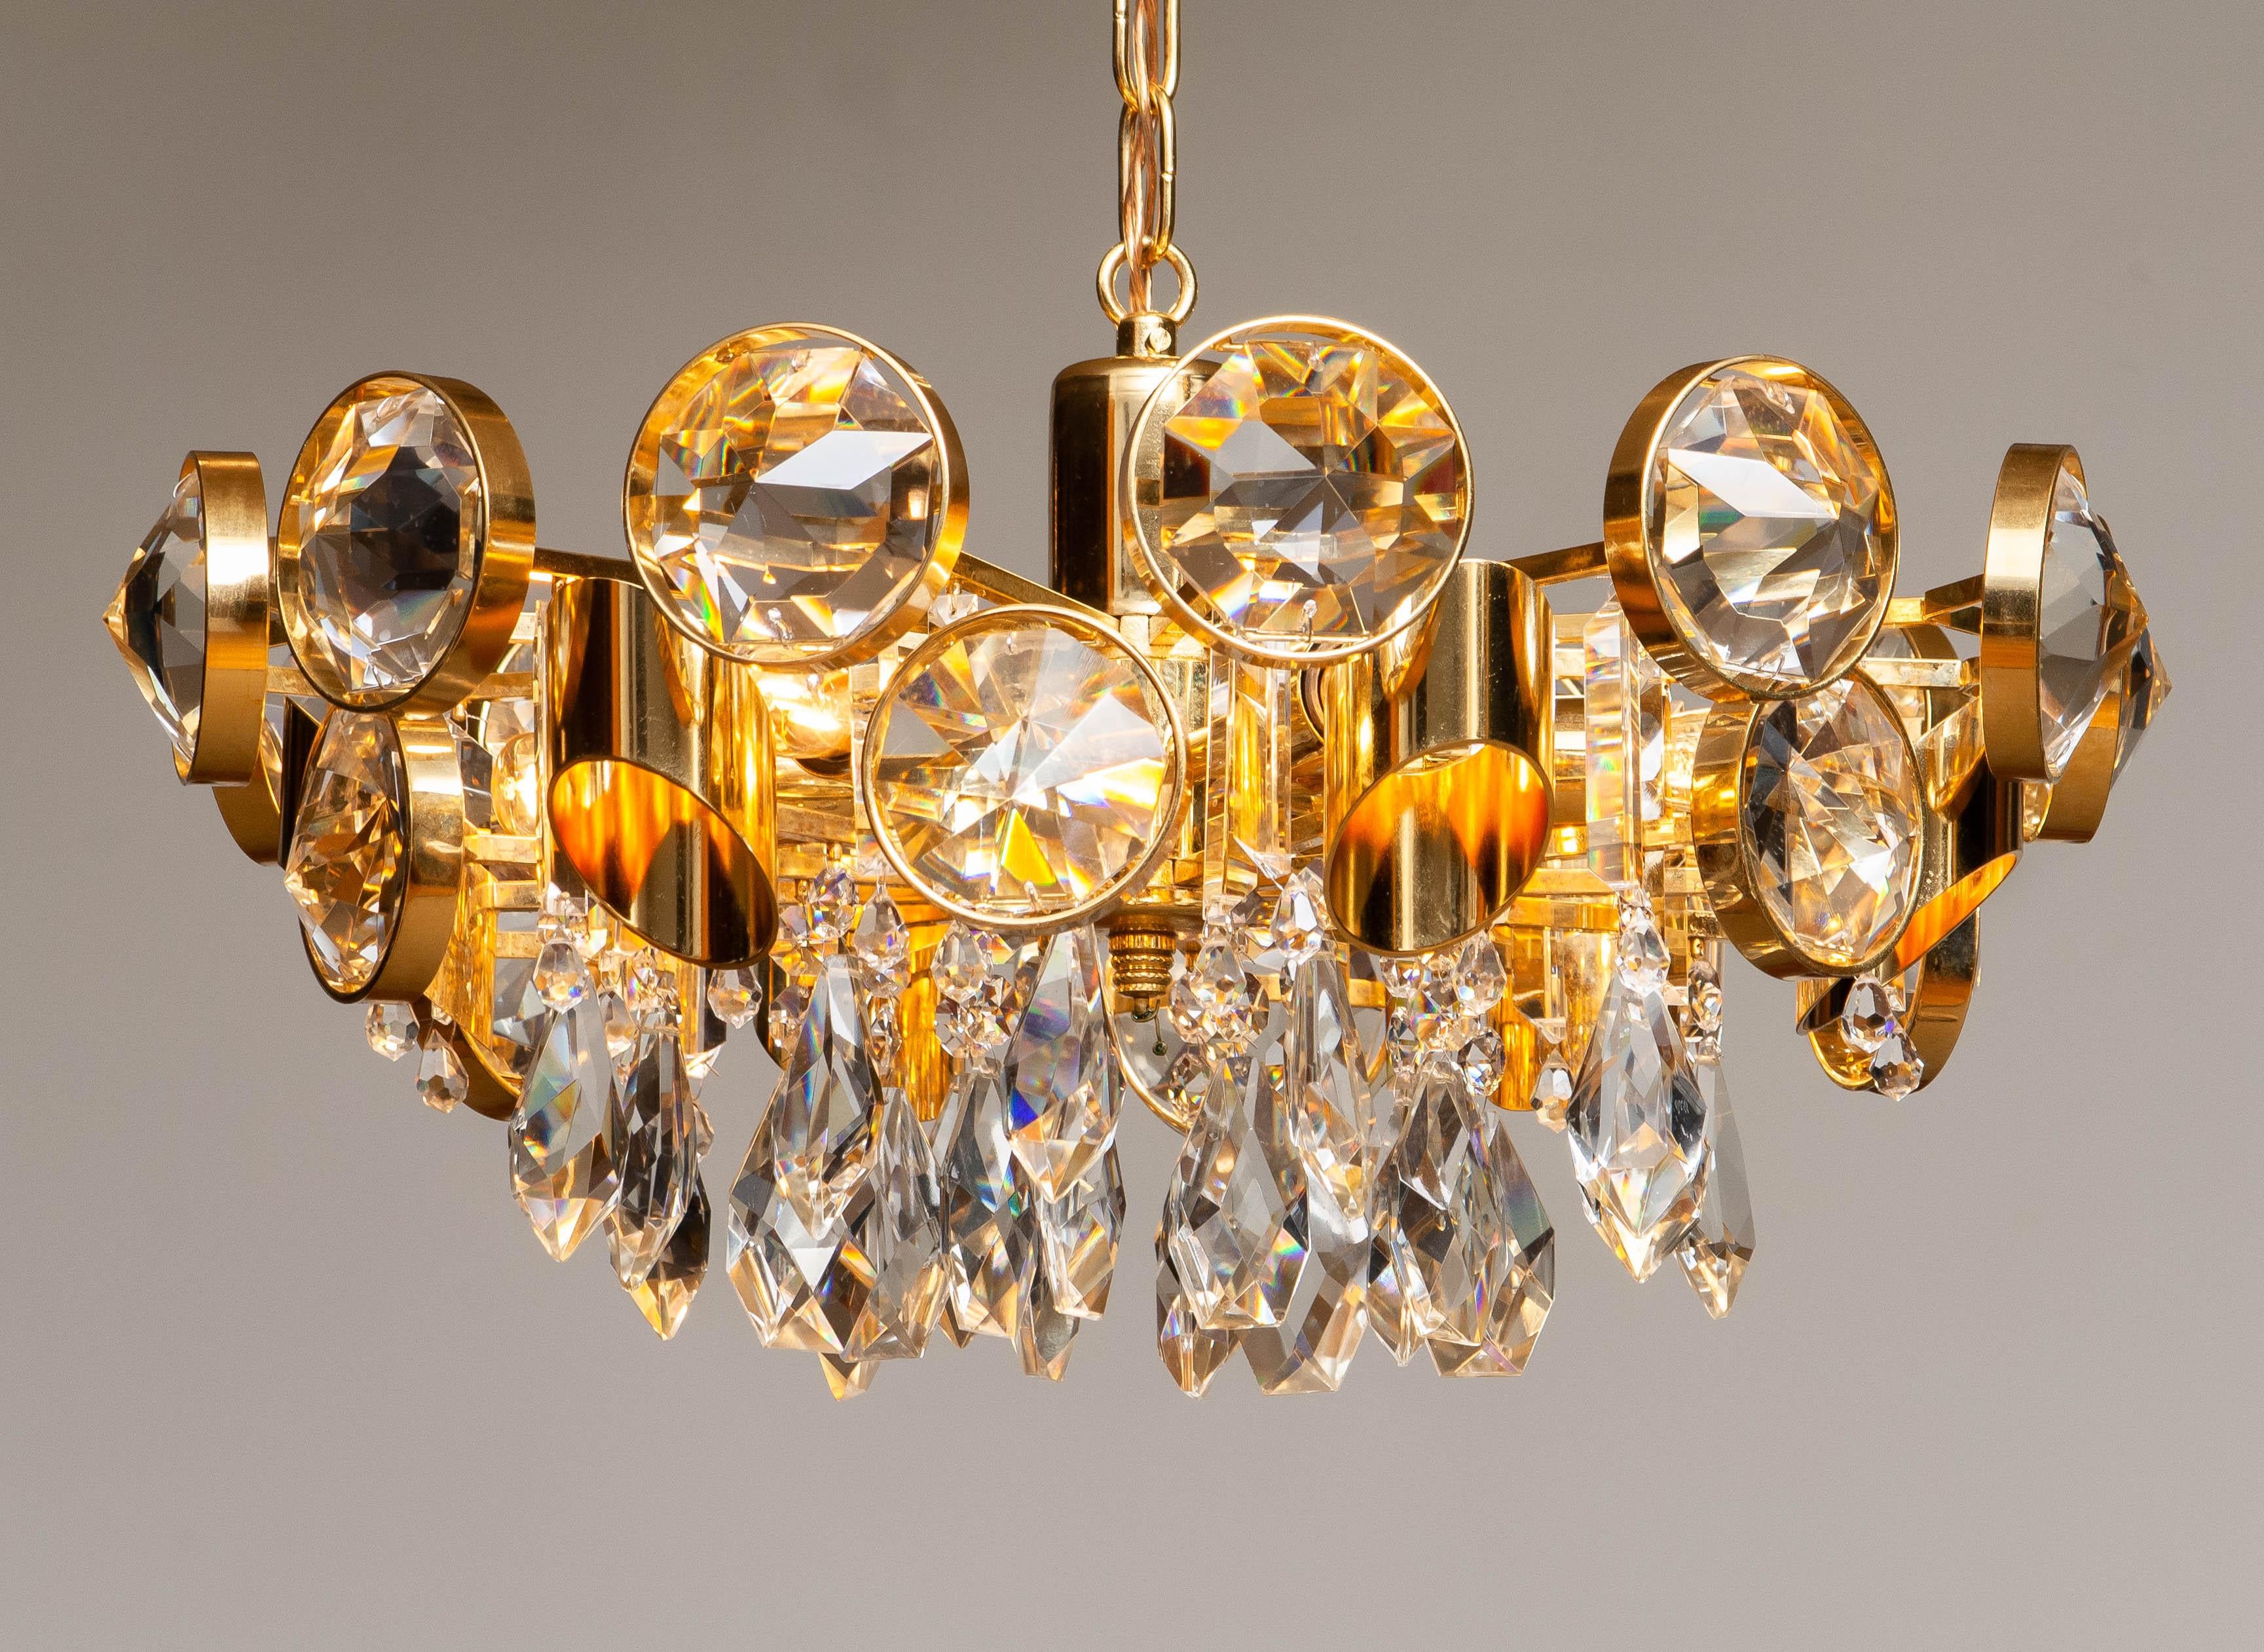 Magnifique et grand luminaire en laiton doré de haute qualité rempli de magnifiques cristaux facettés par Ernest Palme pour Palwa Autriche.
Ce lustre se compose de six douilles E14 / E17 pour 110 ou 230 volts. Techniquement à 100% et en bon état